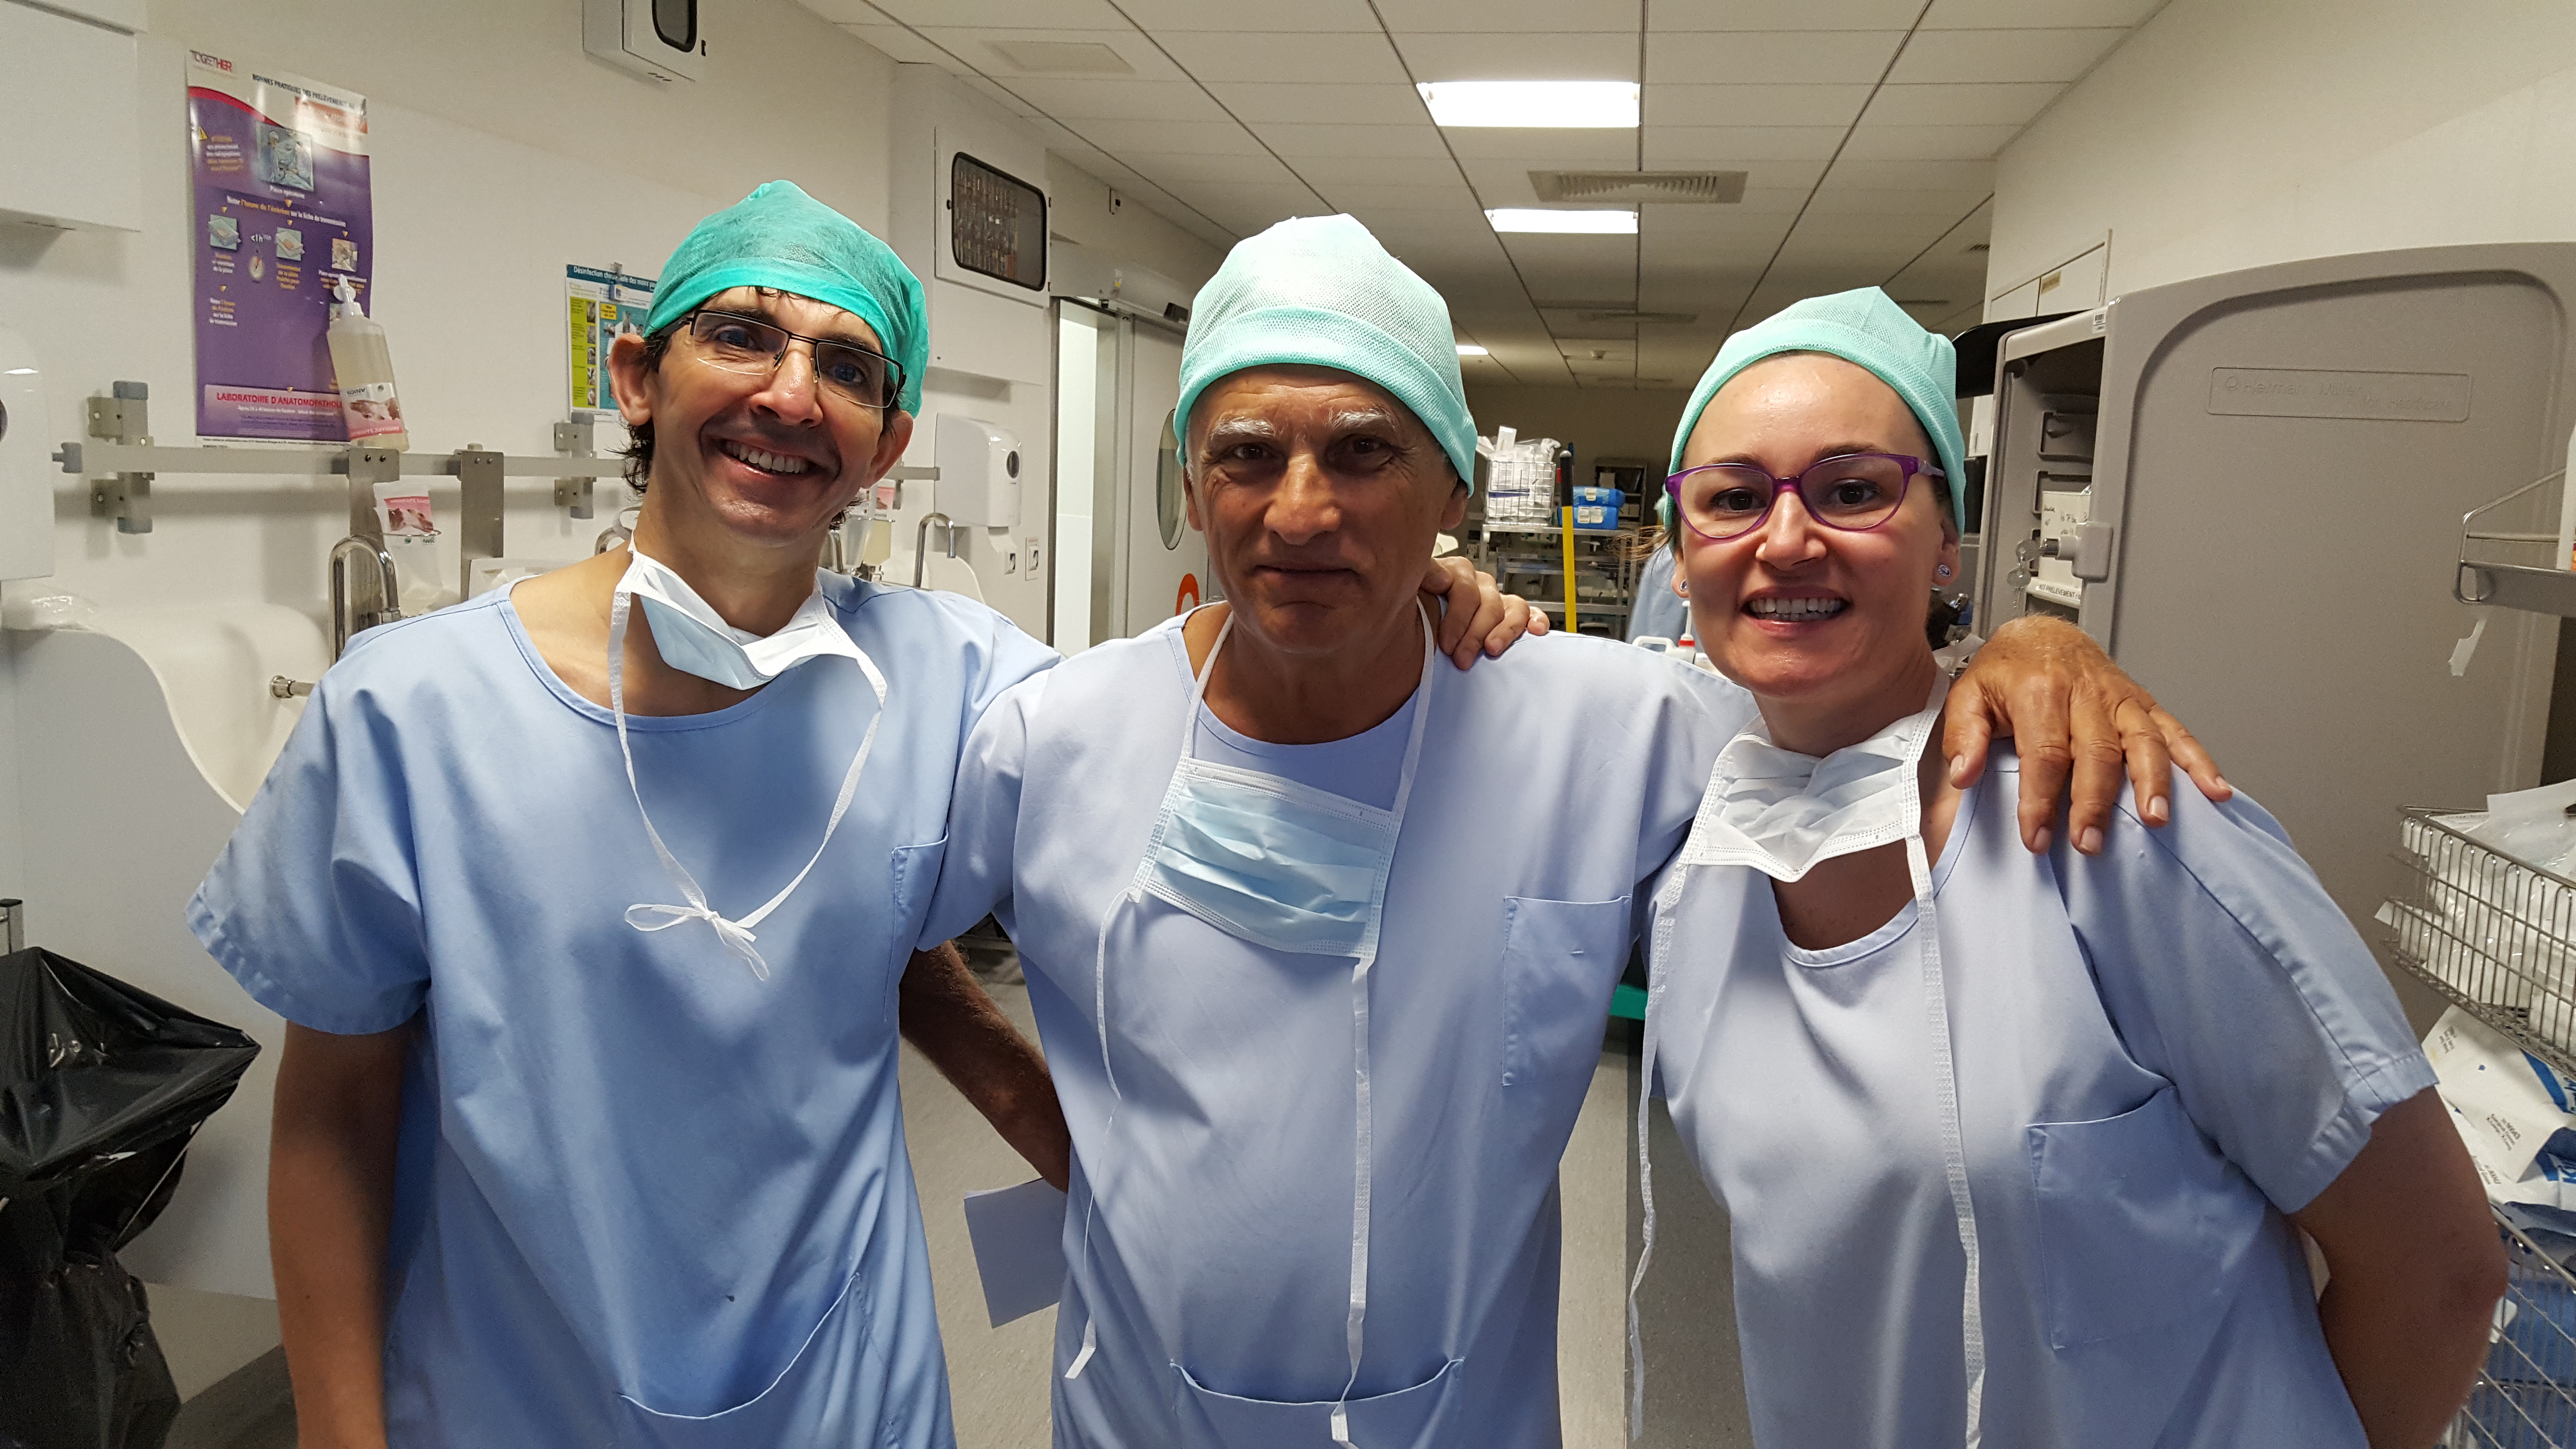 Dr Benito y Dra Manzano, nuevos cirujanos de referencia en Barcelona